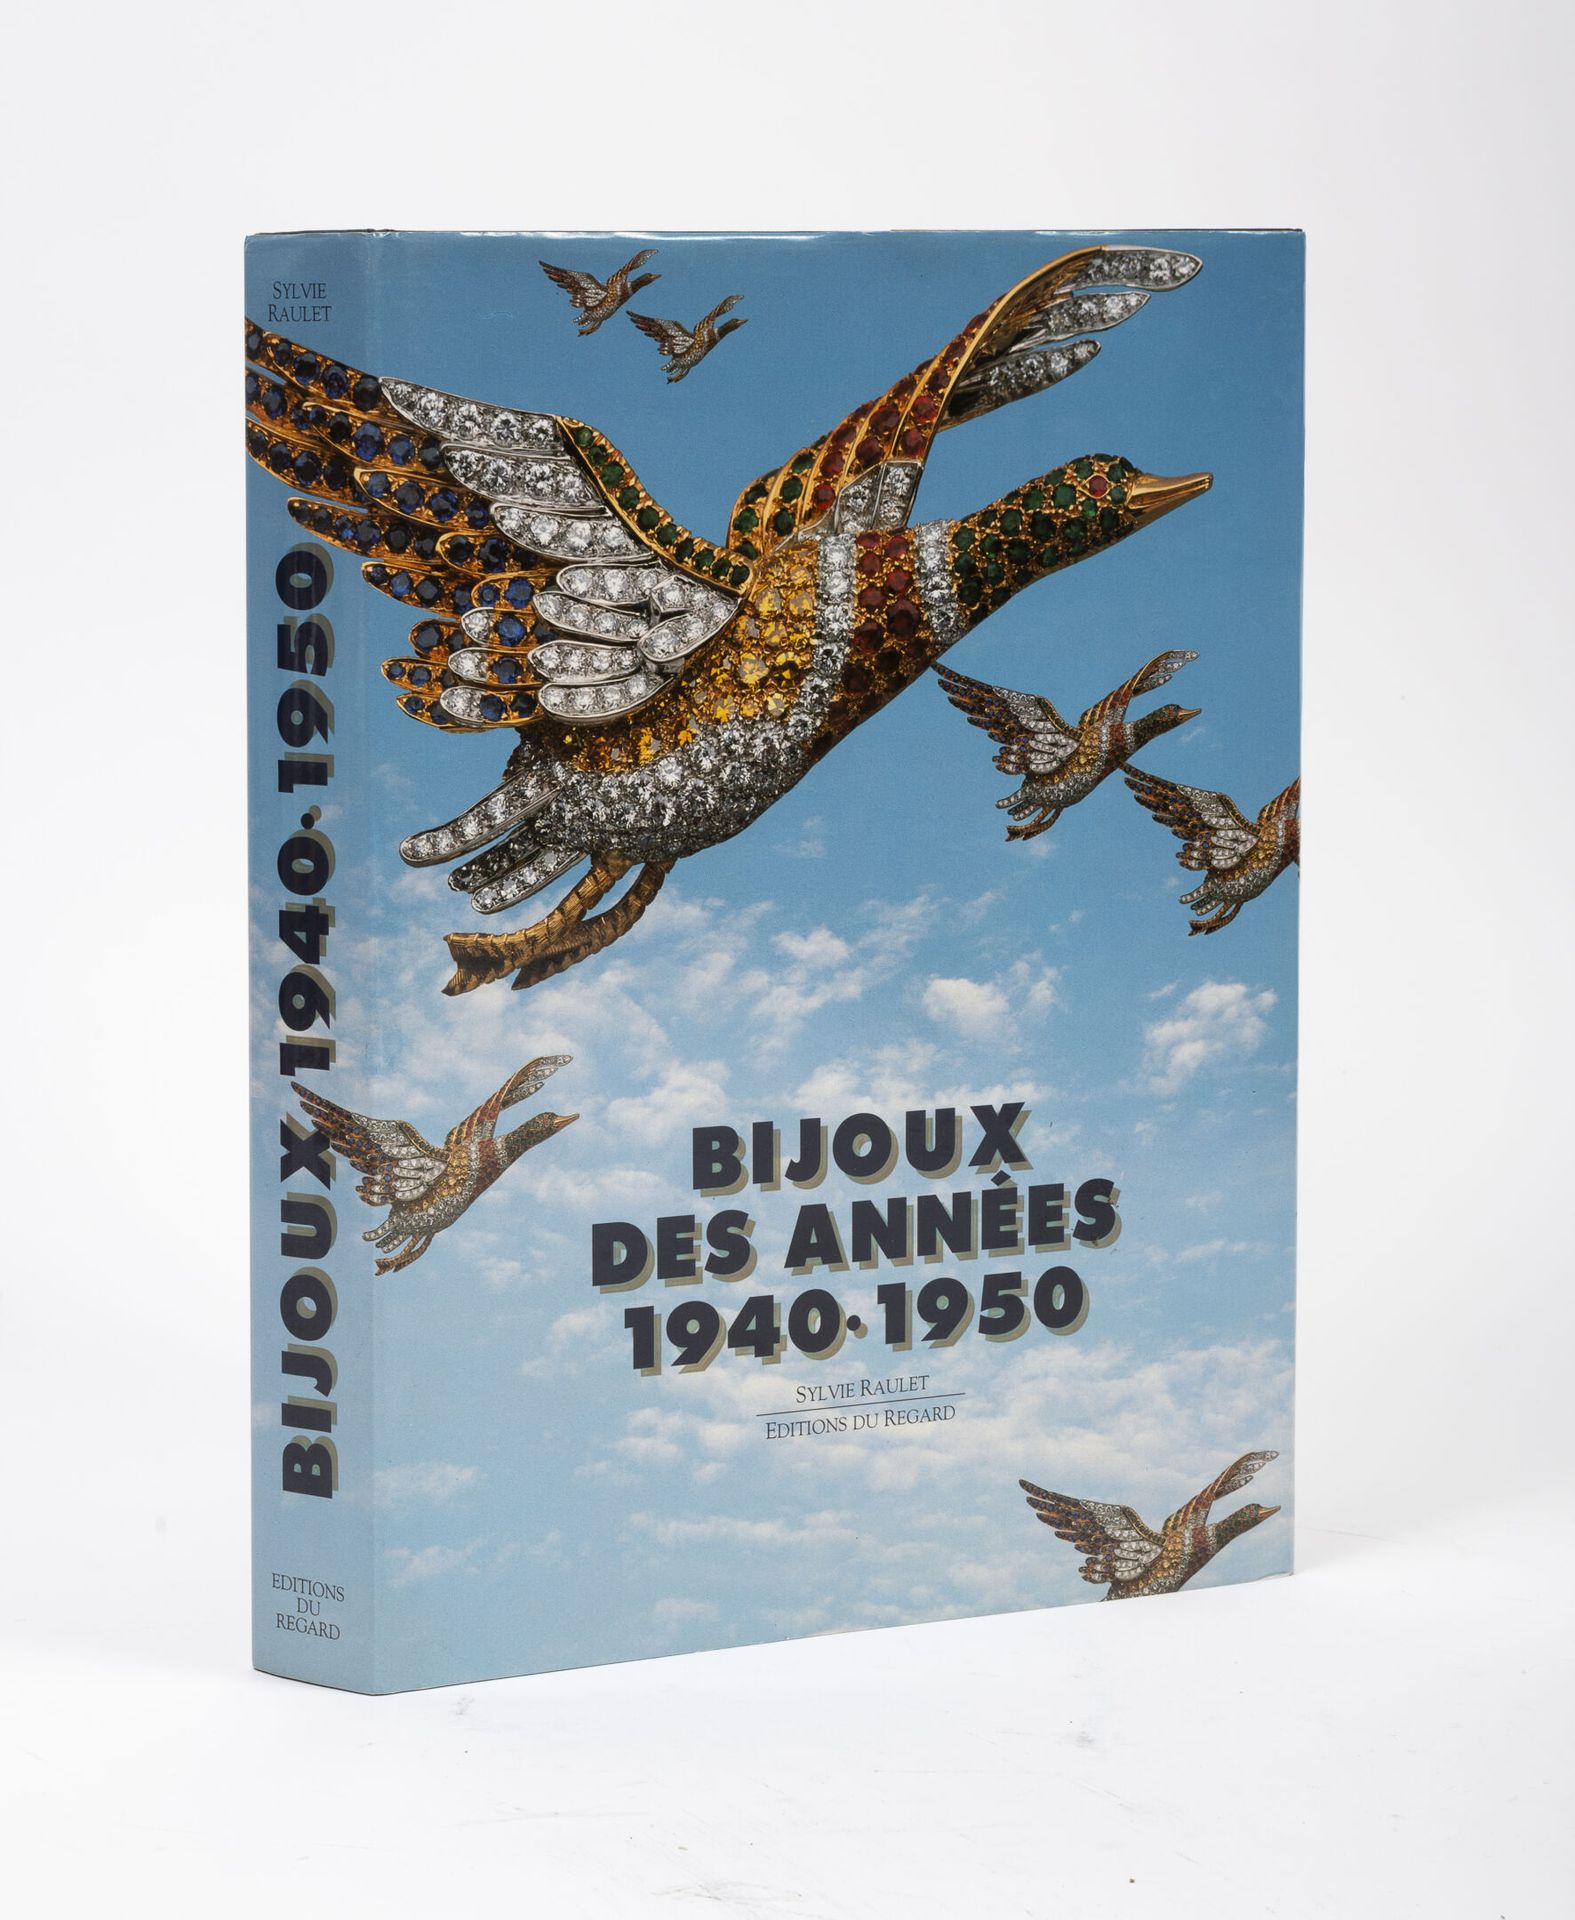 RAULET, Sylvie Bijoux des années 1940-1950.

Editions du Regard, Paris, 1987.

1&hellip;